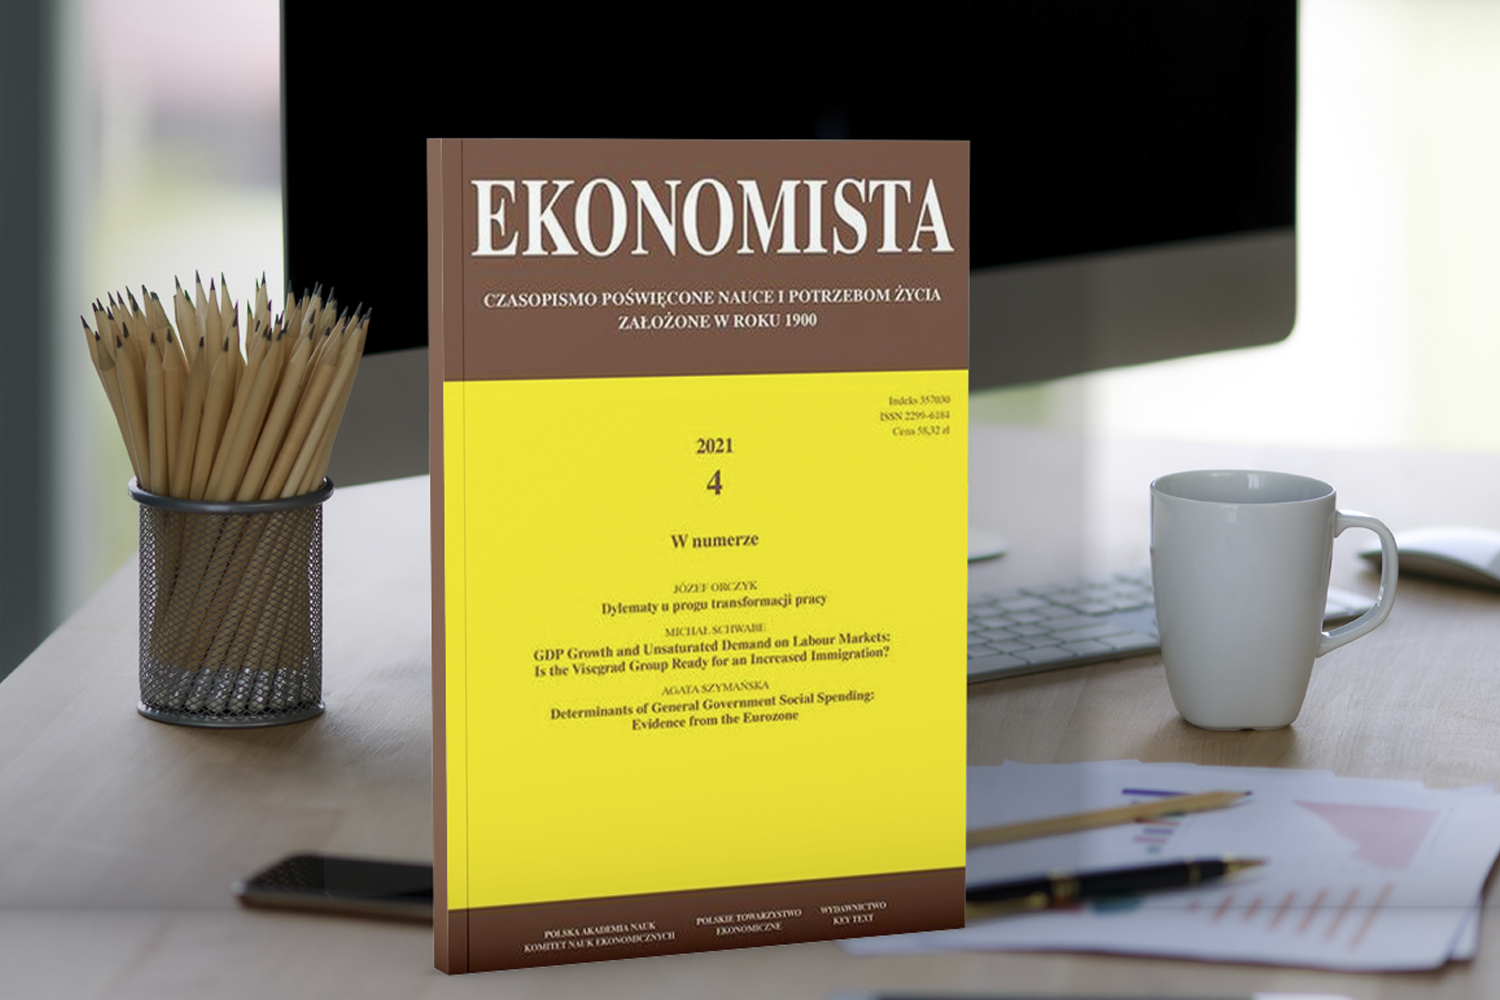 Ekonomista – najstarsze czasopismo ekonomiczne